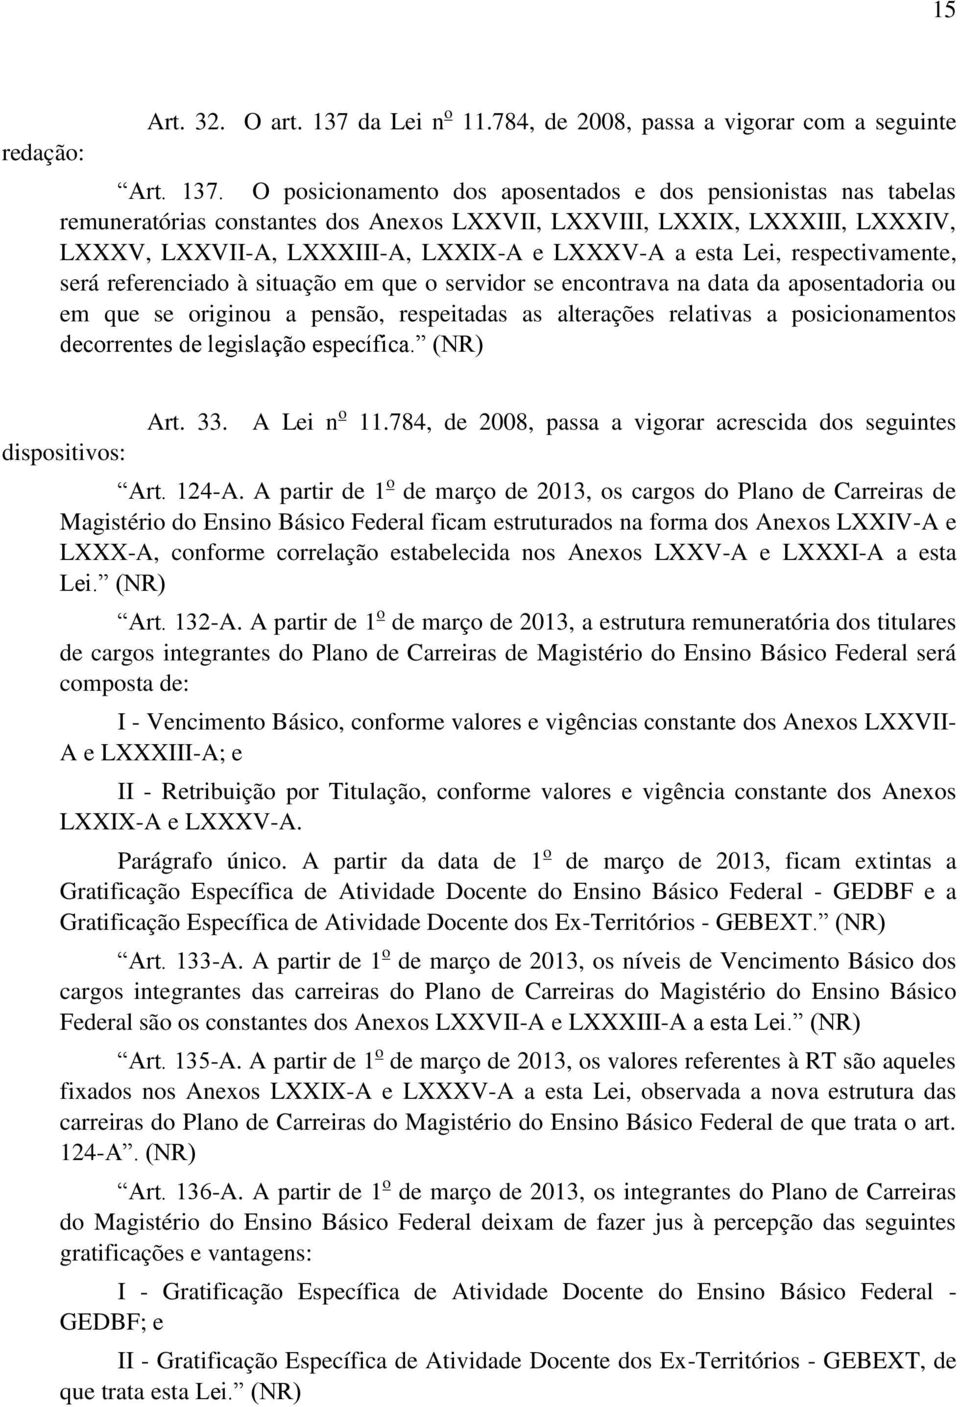 O posicionamento dos aposentados e dos pensionistas nas tabelas remuneratórias constantes dos Anexos LXXVII, LXXVIII, LXXIX, LXXXIII, LXXXIV, LXXXV, LXXVII-A, LXXXIII-A, LXXIX-A e LXXXV-A a esta Lei,